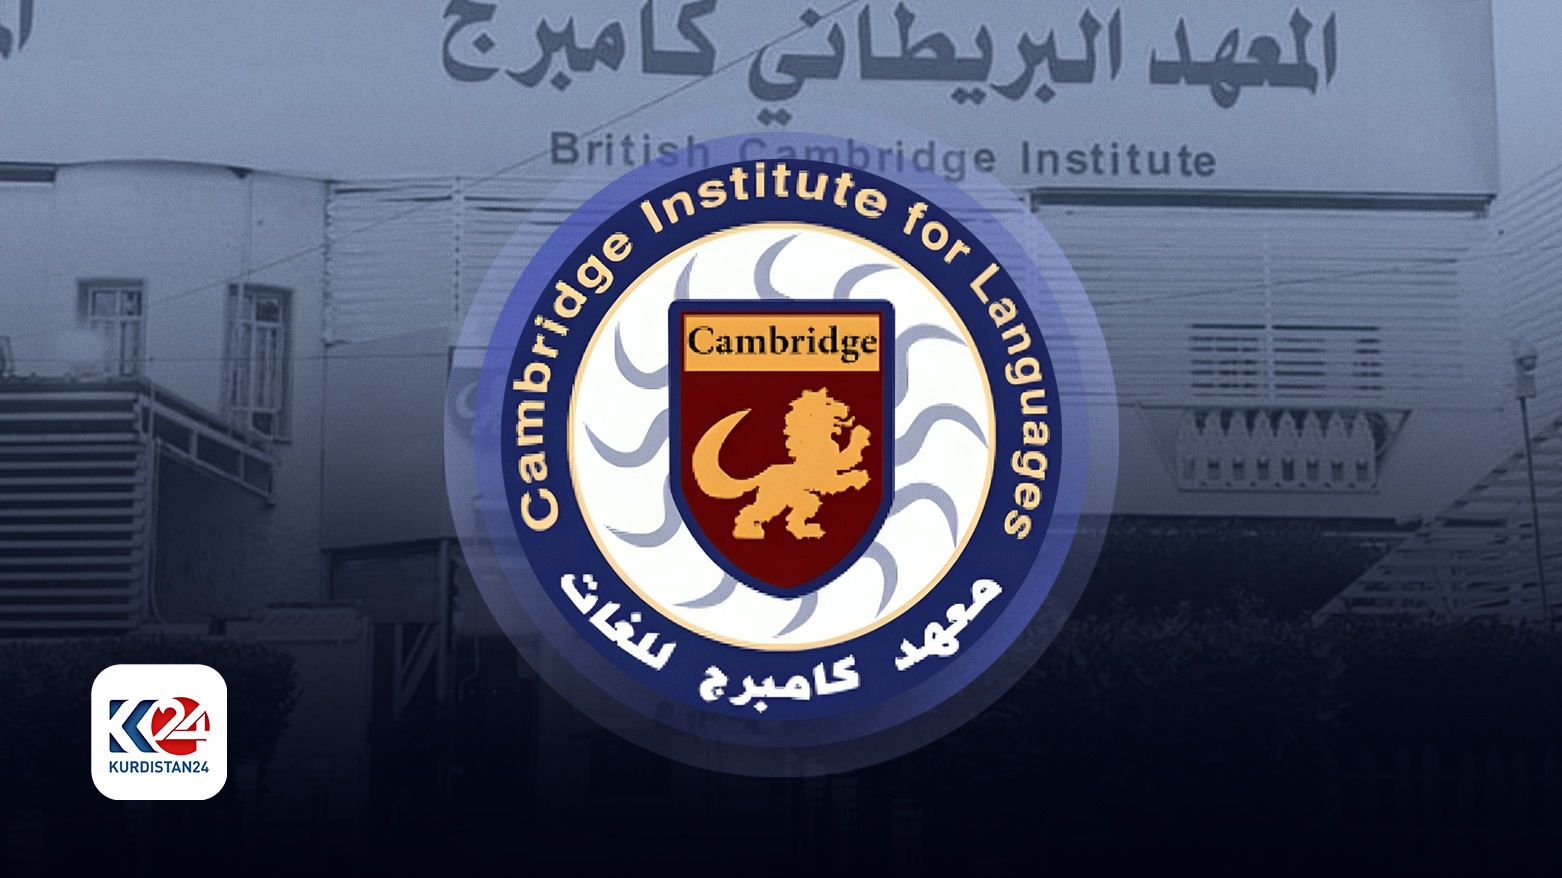 British Cambridge Educational Institute logo. (Photo: Kurdistan24)